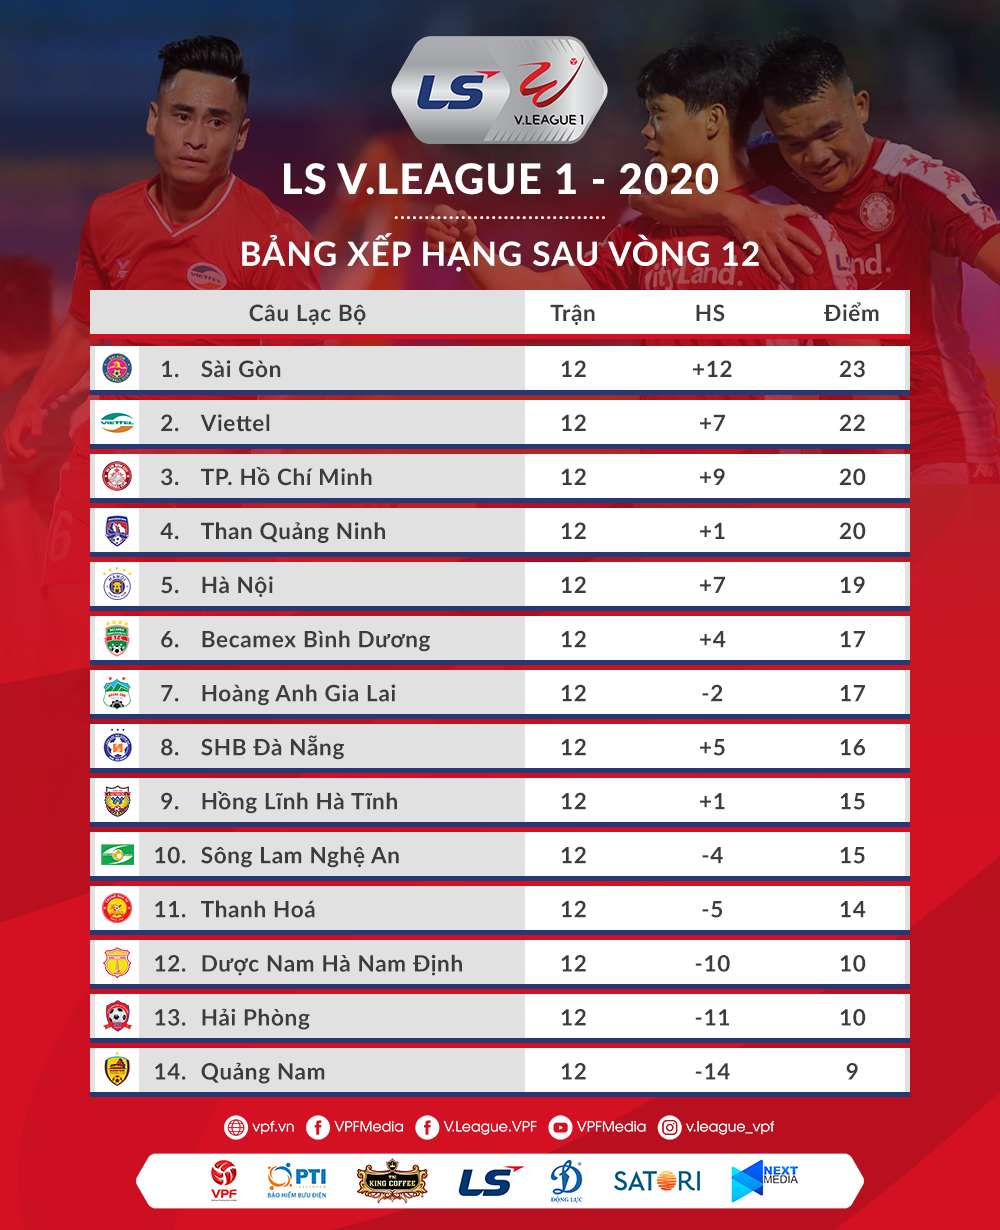 Bảng xếp hạng sau vòng 12 V.League 2020 đã xác định được 5 đội chắc chắn trụ hạng cũng như 3 đội chắc chắn phải vào nhóm đua tranh vé trụ hạng. Ảnh: VPF.